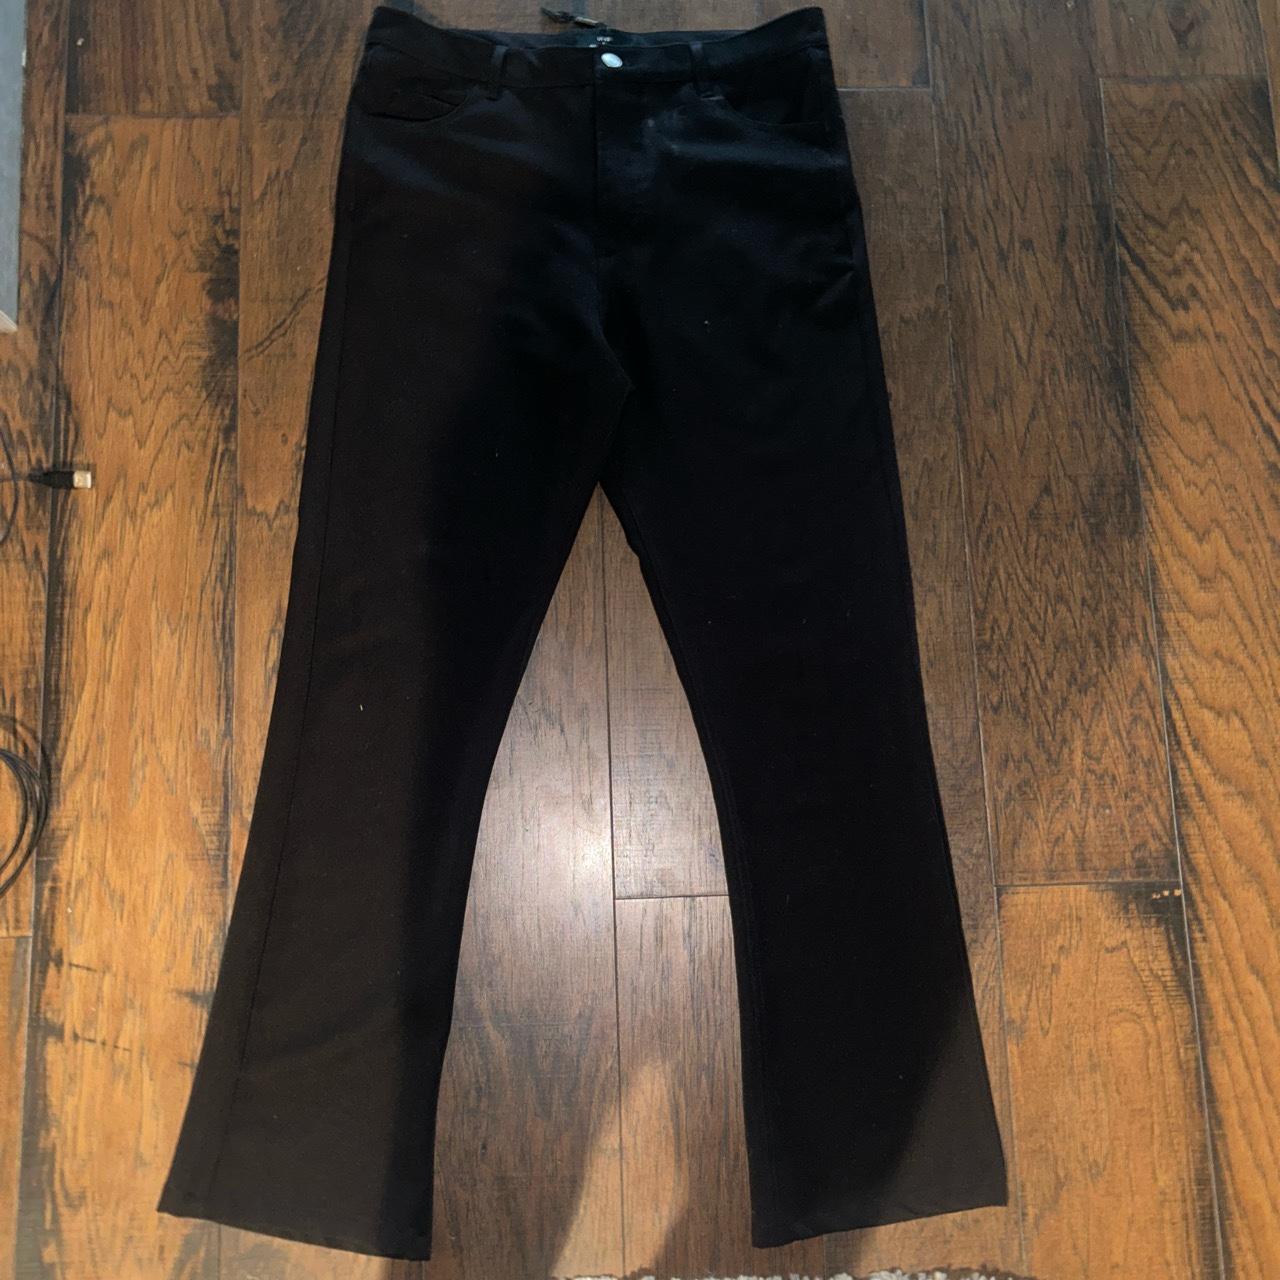 black flare jeans size 32 - Depop